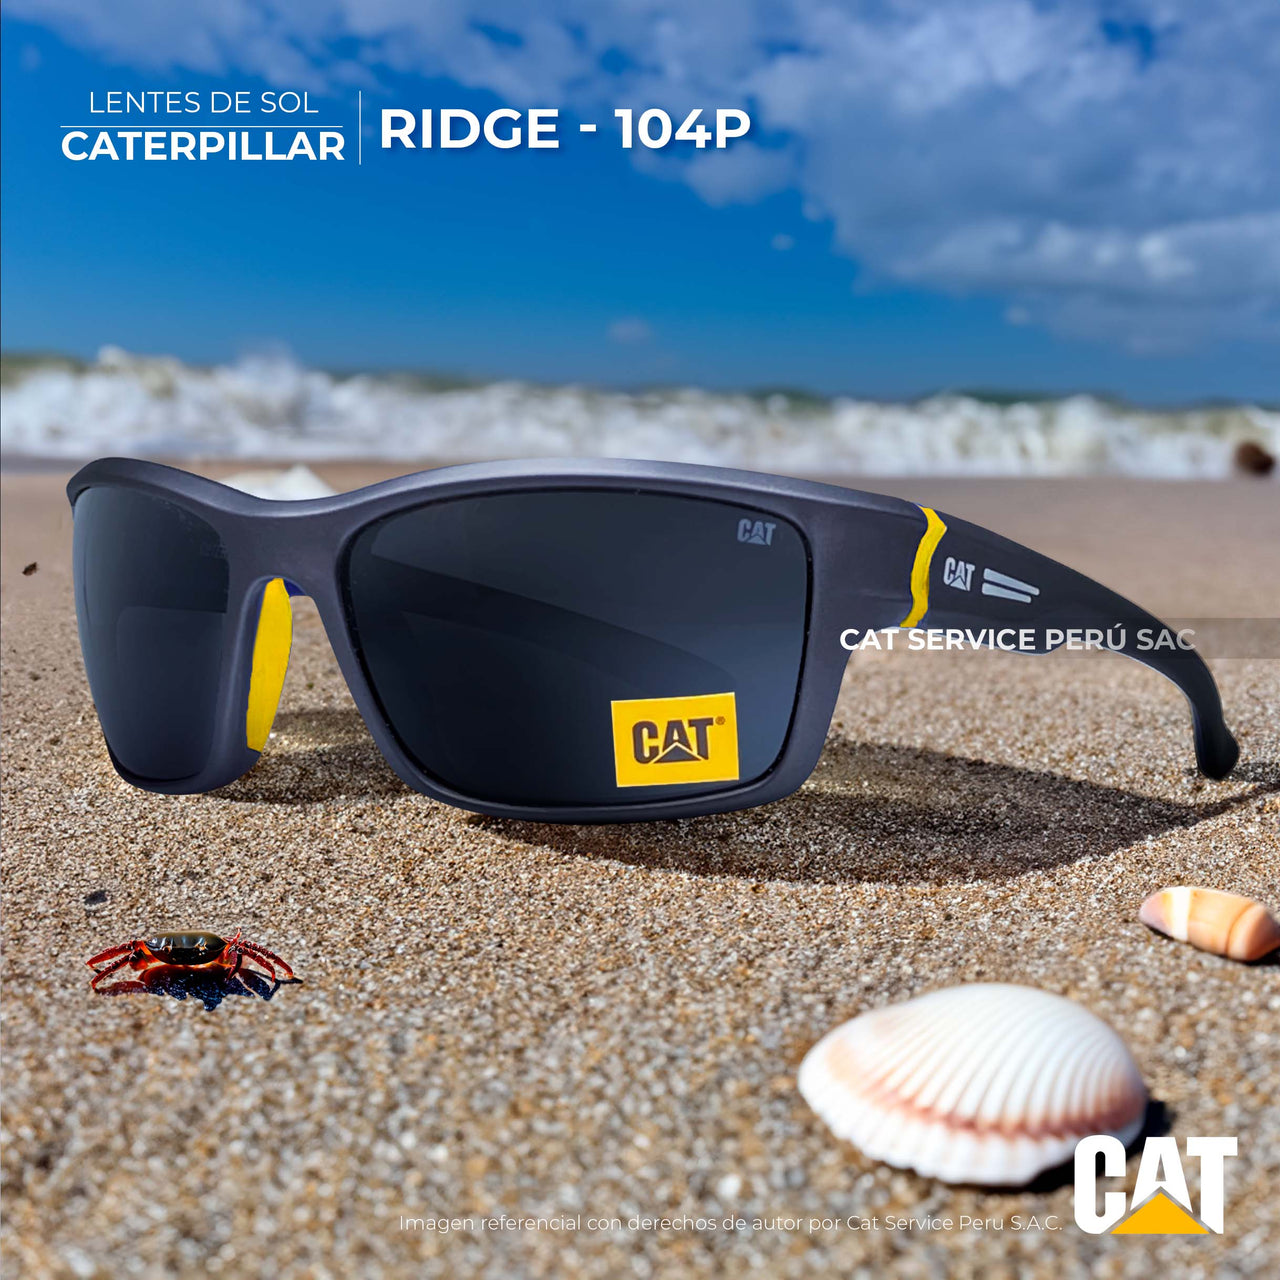 Cat Ridge 104P Black Moons Polarized Sunglasses 